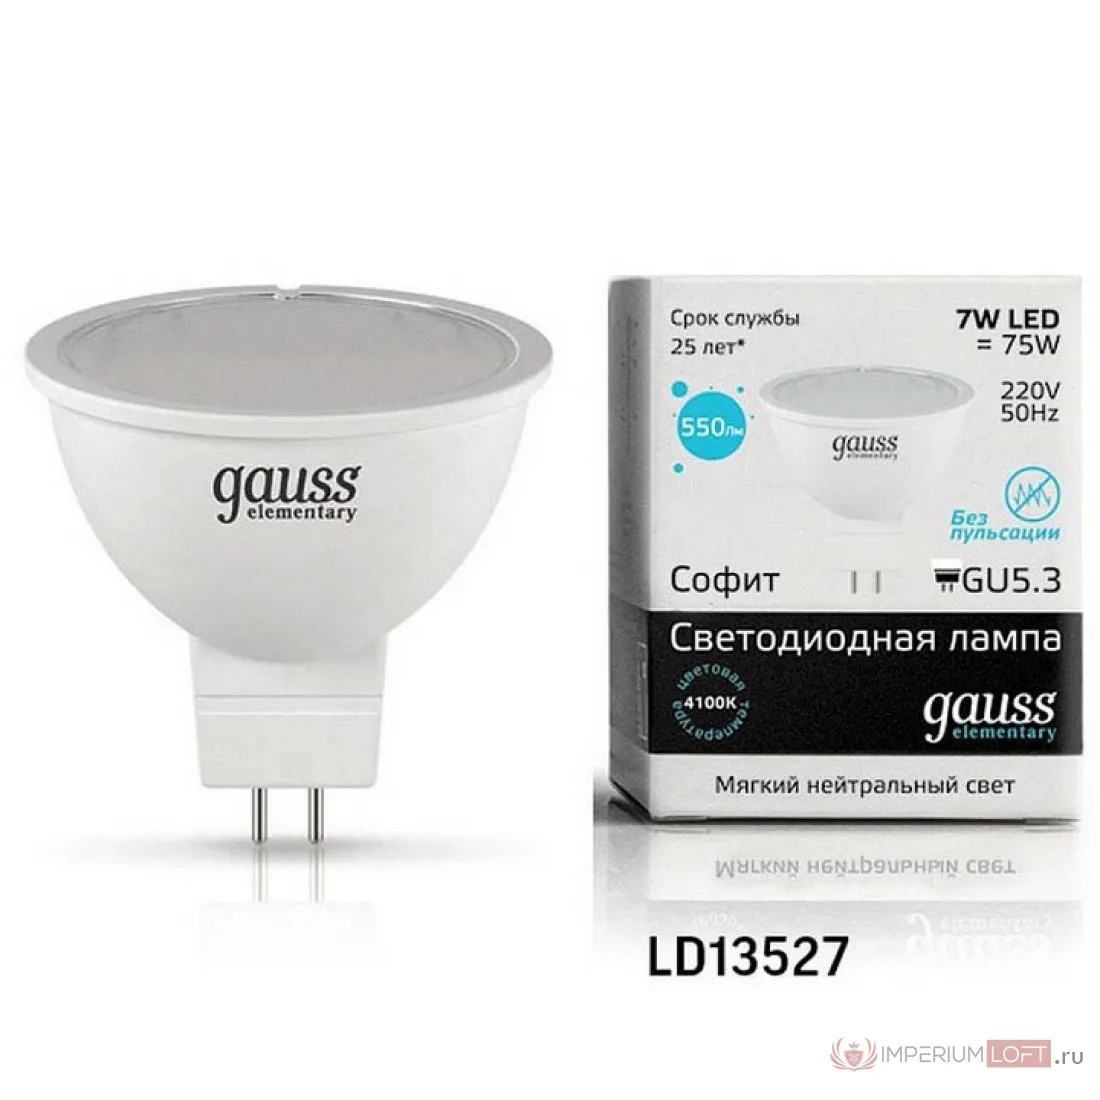 Светодиодная лампа 5.3 220. Светодиодная лампа Gauss 13527 led Elementary mr16 gu5.3 7w 4100k. Gauss gu5.3 7w. Gauss Elementary gu5.3 7w 4100k. Гаусс gu5.3 3.5w.